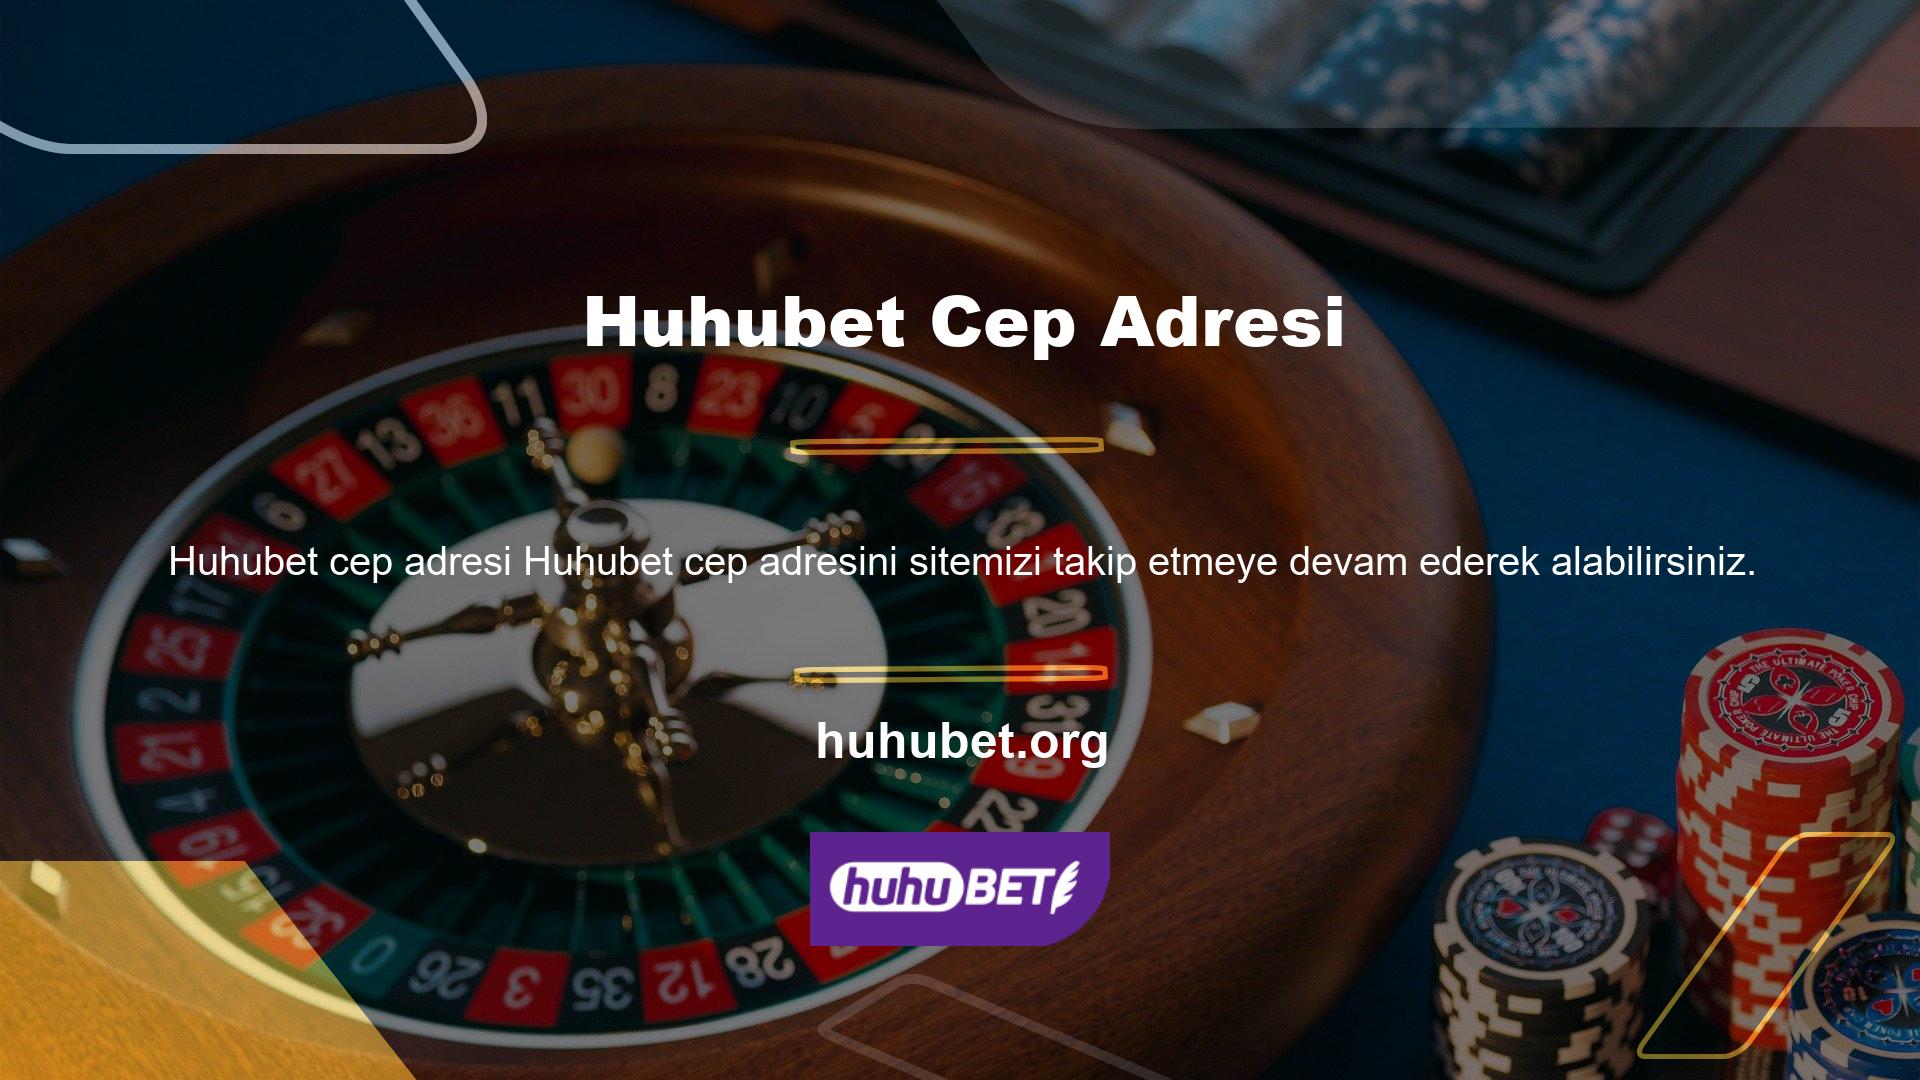 Huhubet, popüler casino dünyasında temel bir üründür, yapıları güvenilirlik sorunu oluşturmaz ve yerleşik yapıları, akıllı telefonunuzdan veya tabletinizden kullanımlarını kolaylaştırır